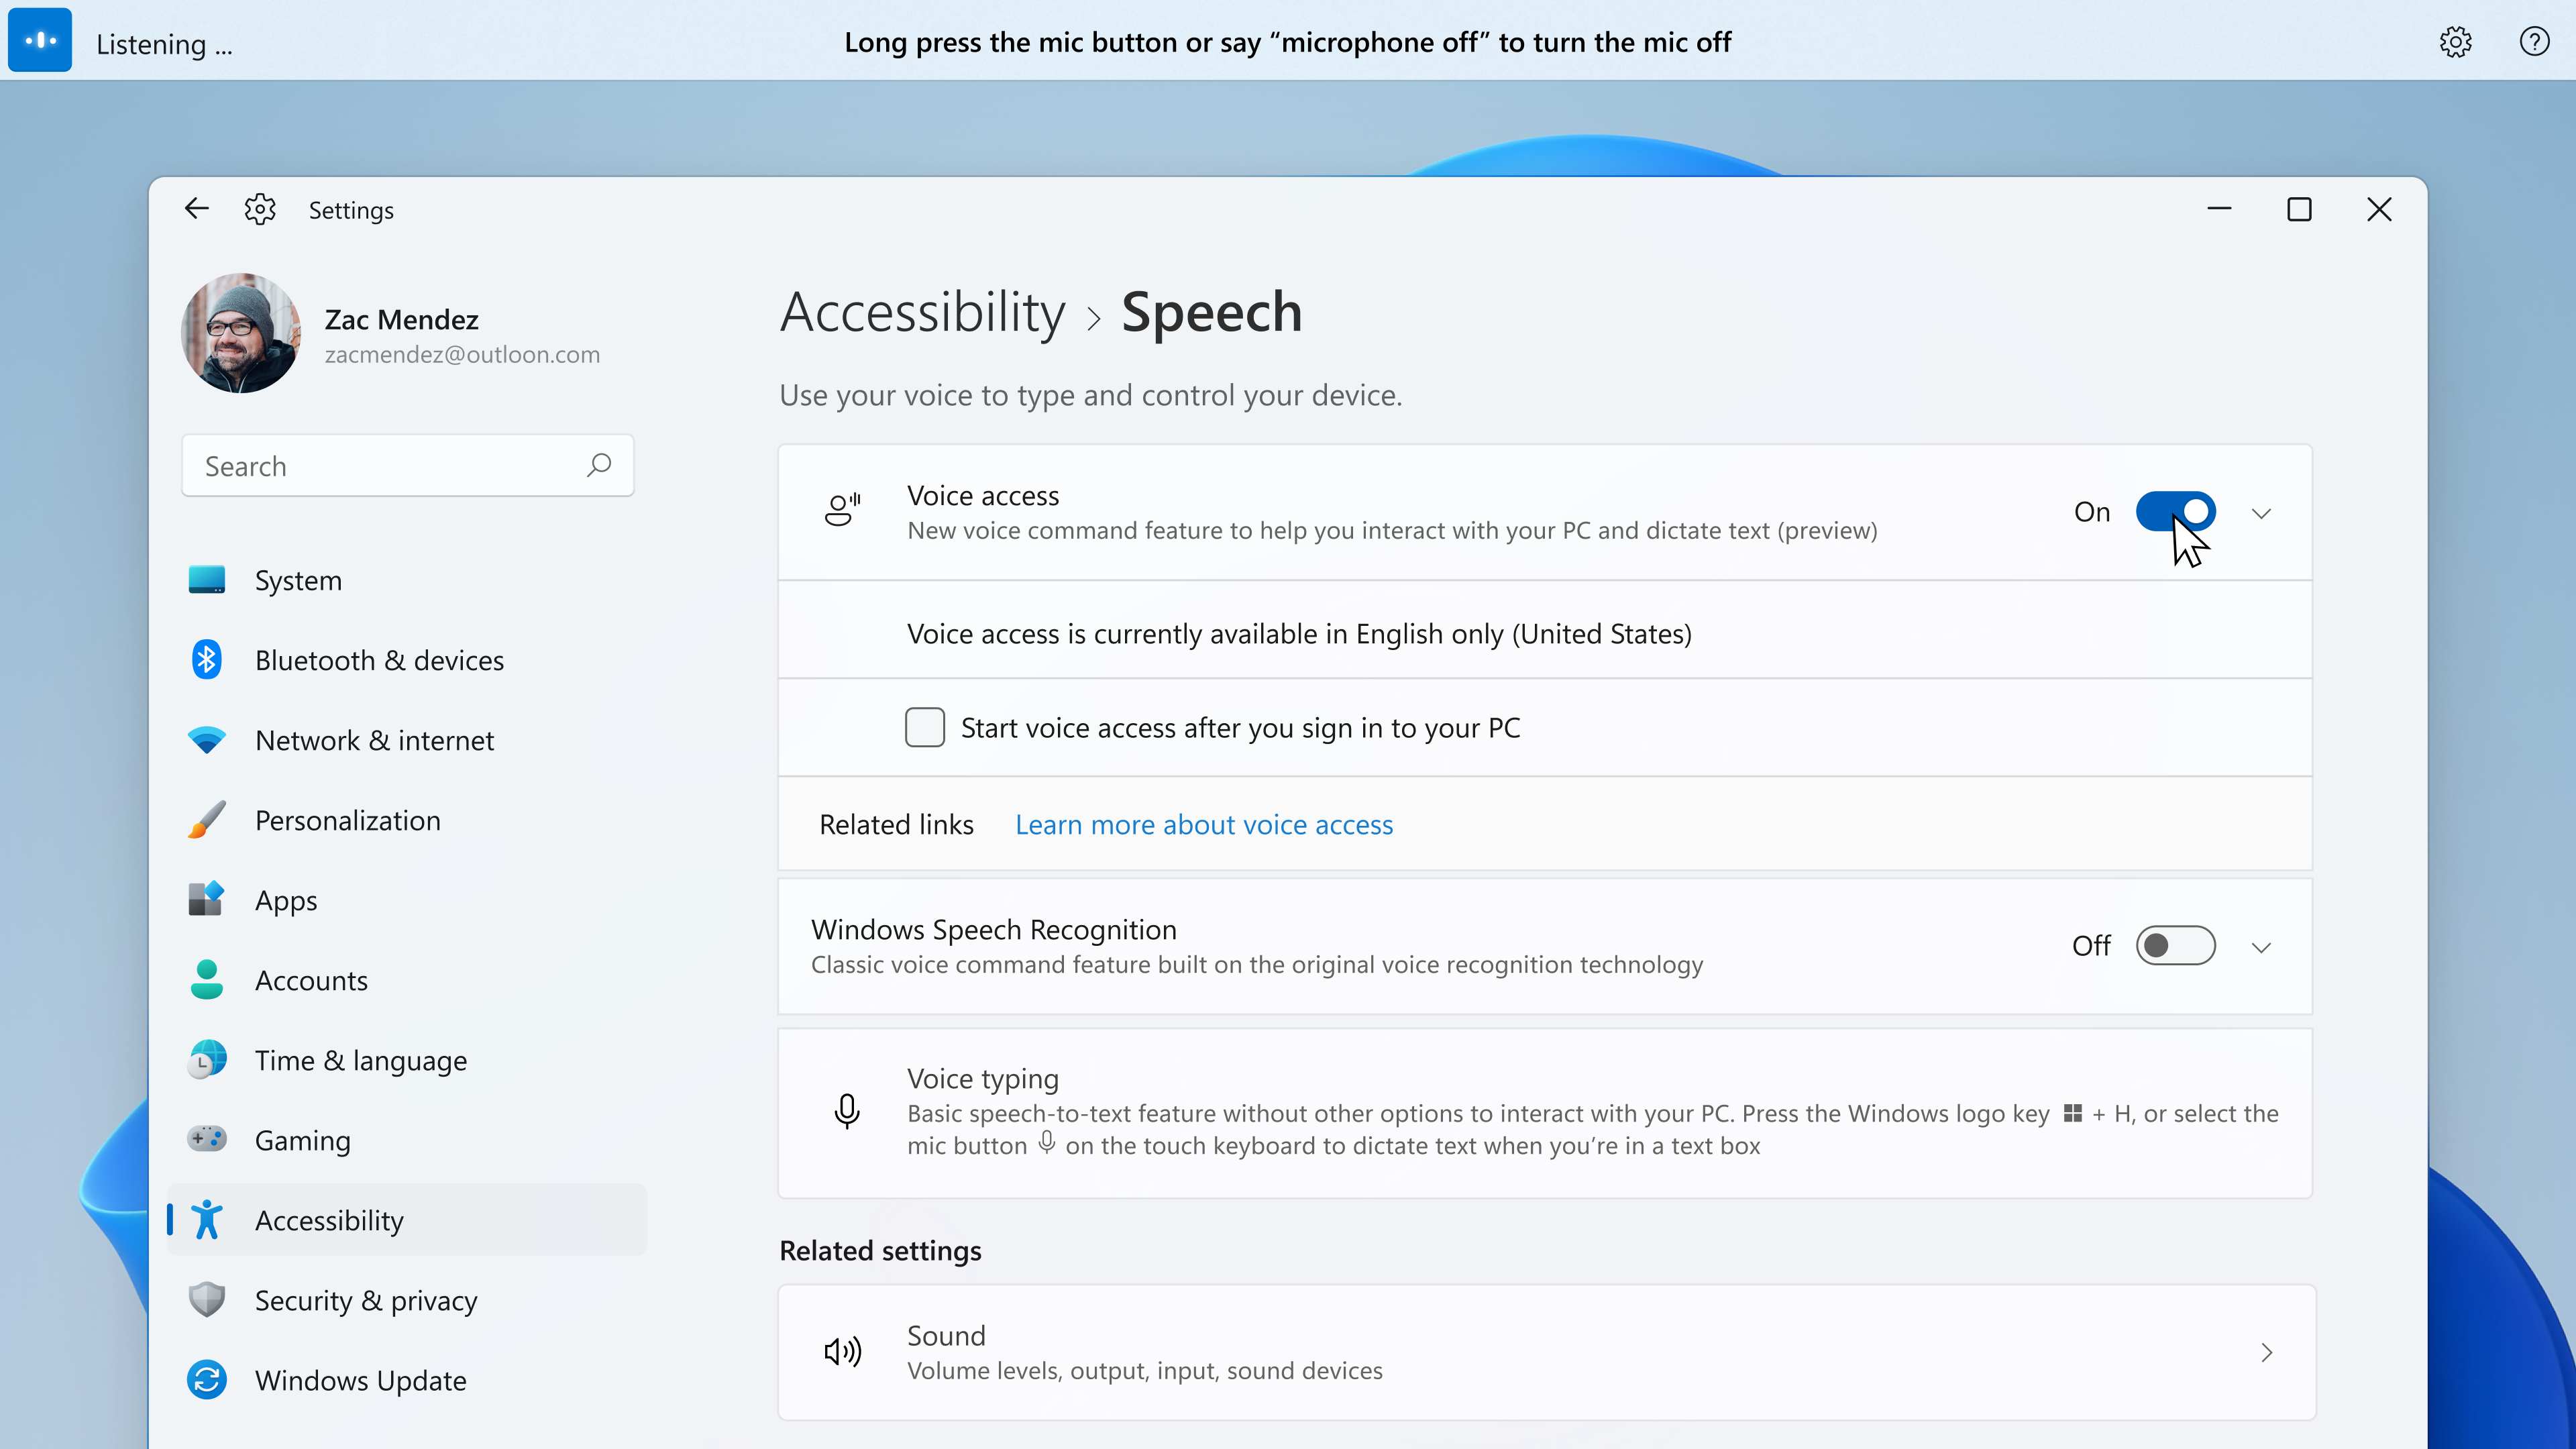 Vous pouvez activer l'accès vocal sous Paramètres > Accessibilité > Parole.